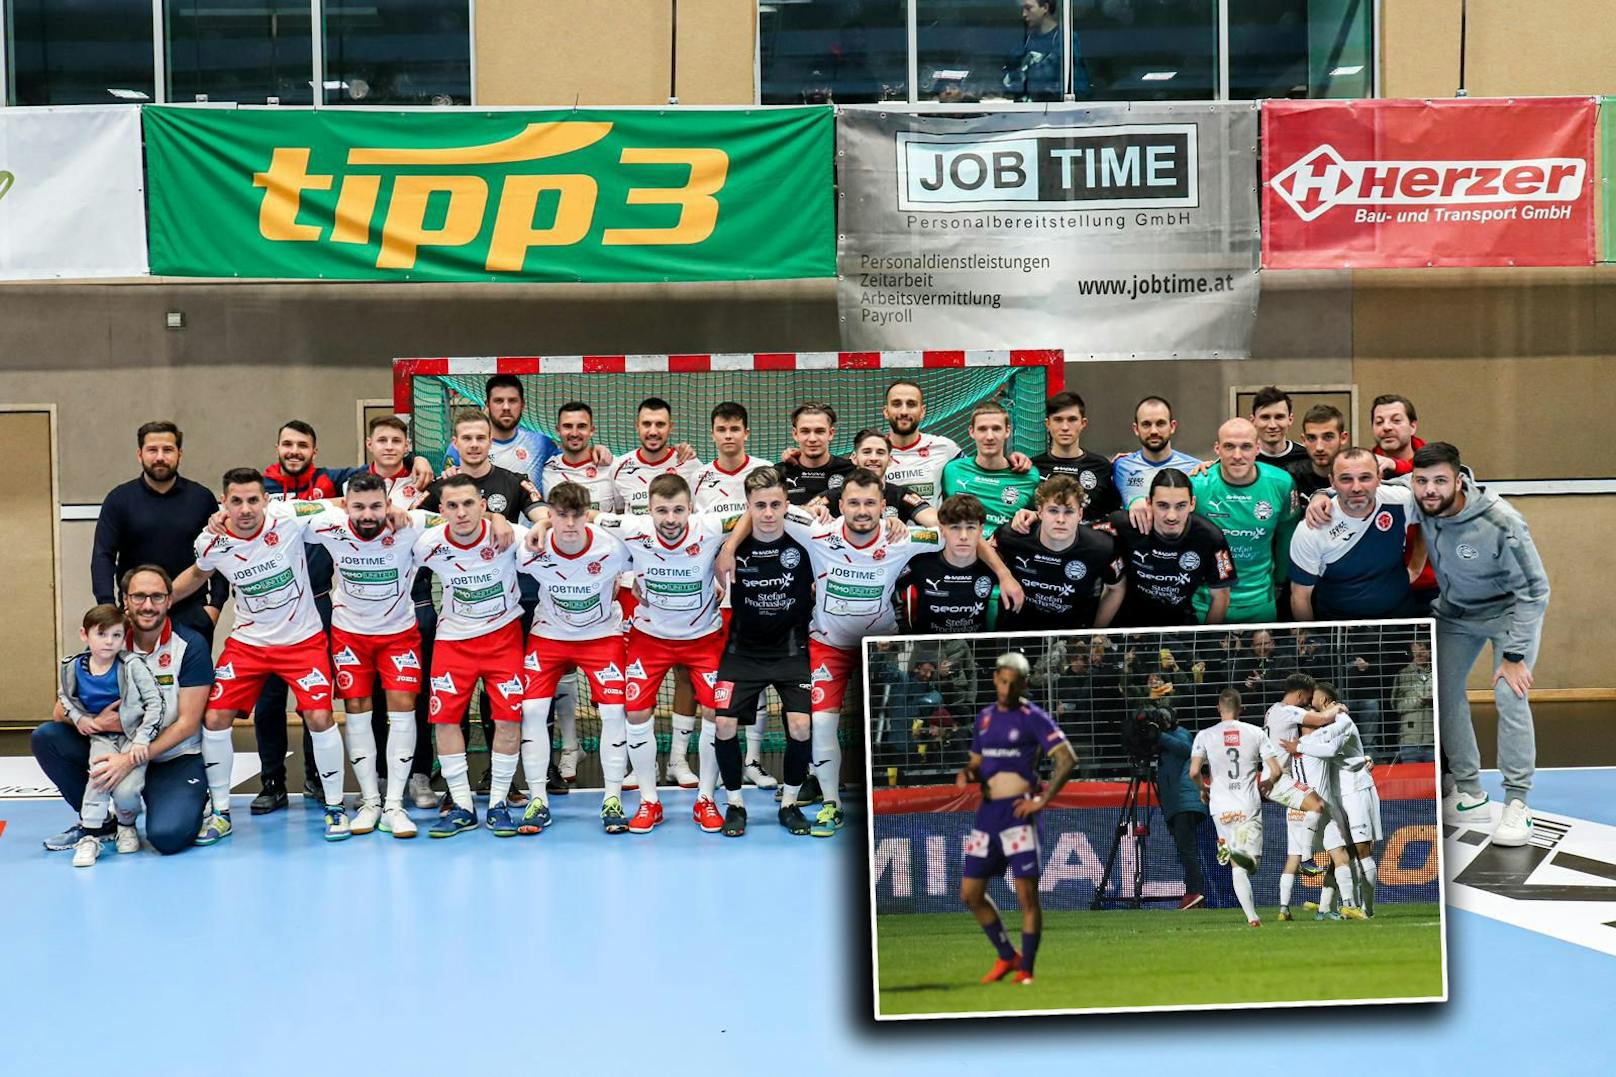 Nach Cup-Sensation des Wiener Sportclubs: Nächster Coup mit Futsal?